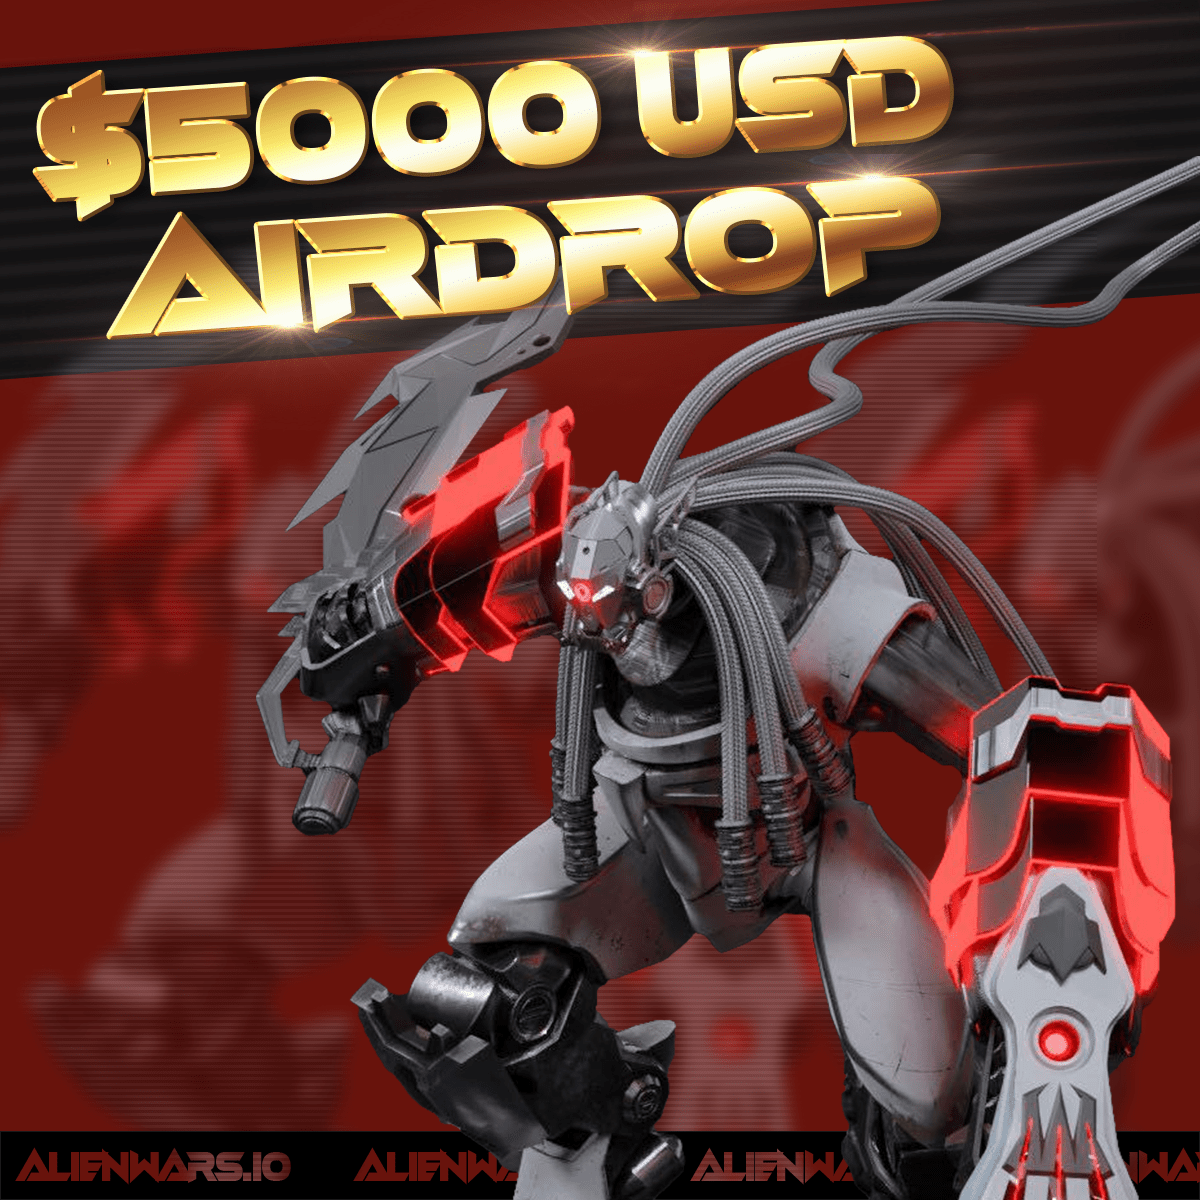 Win Alien Wars $5000 USD Giveaway